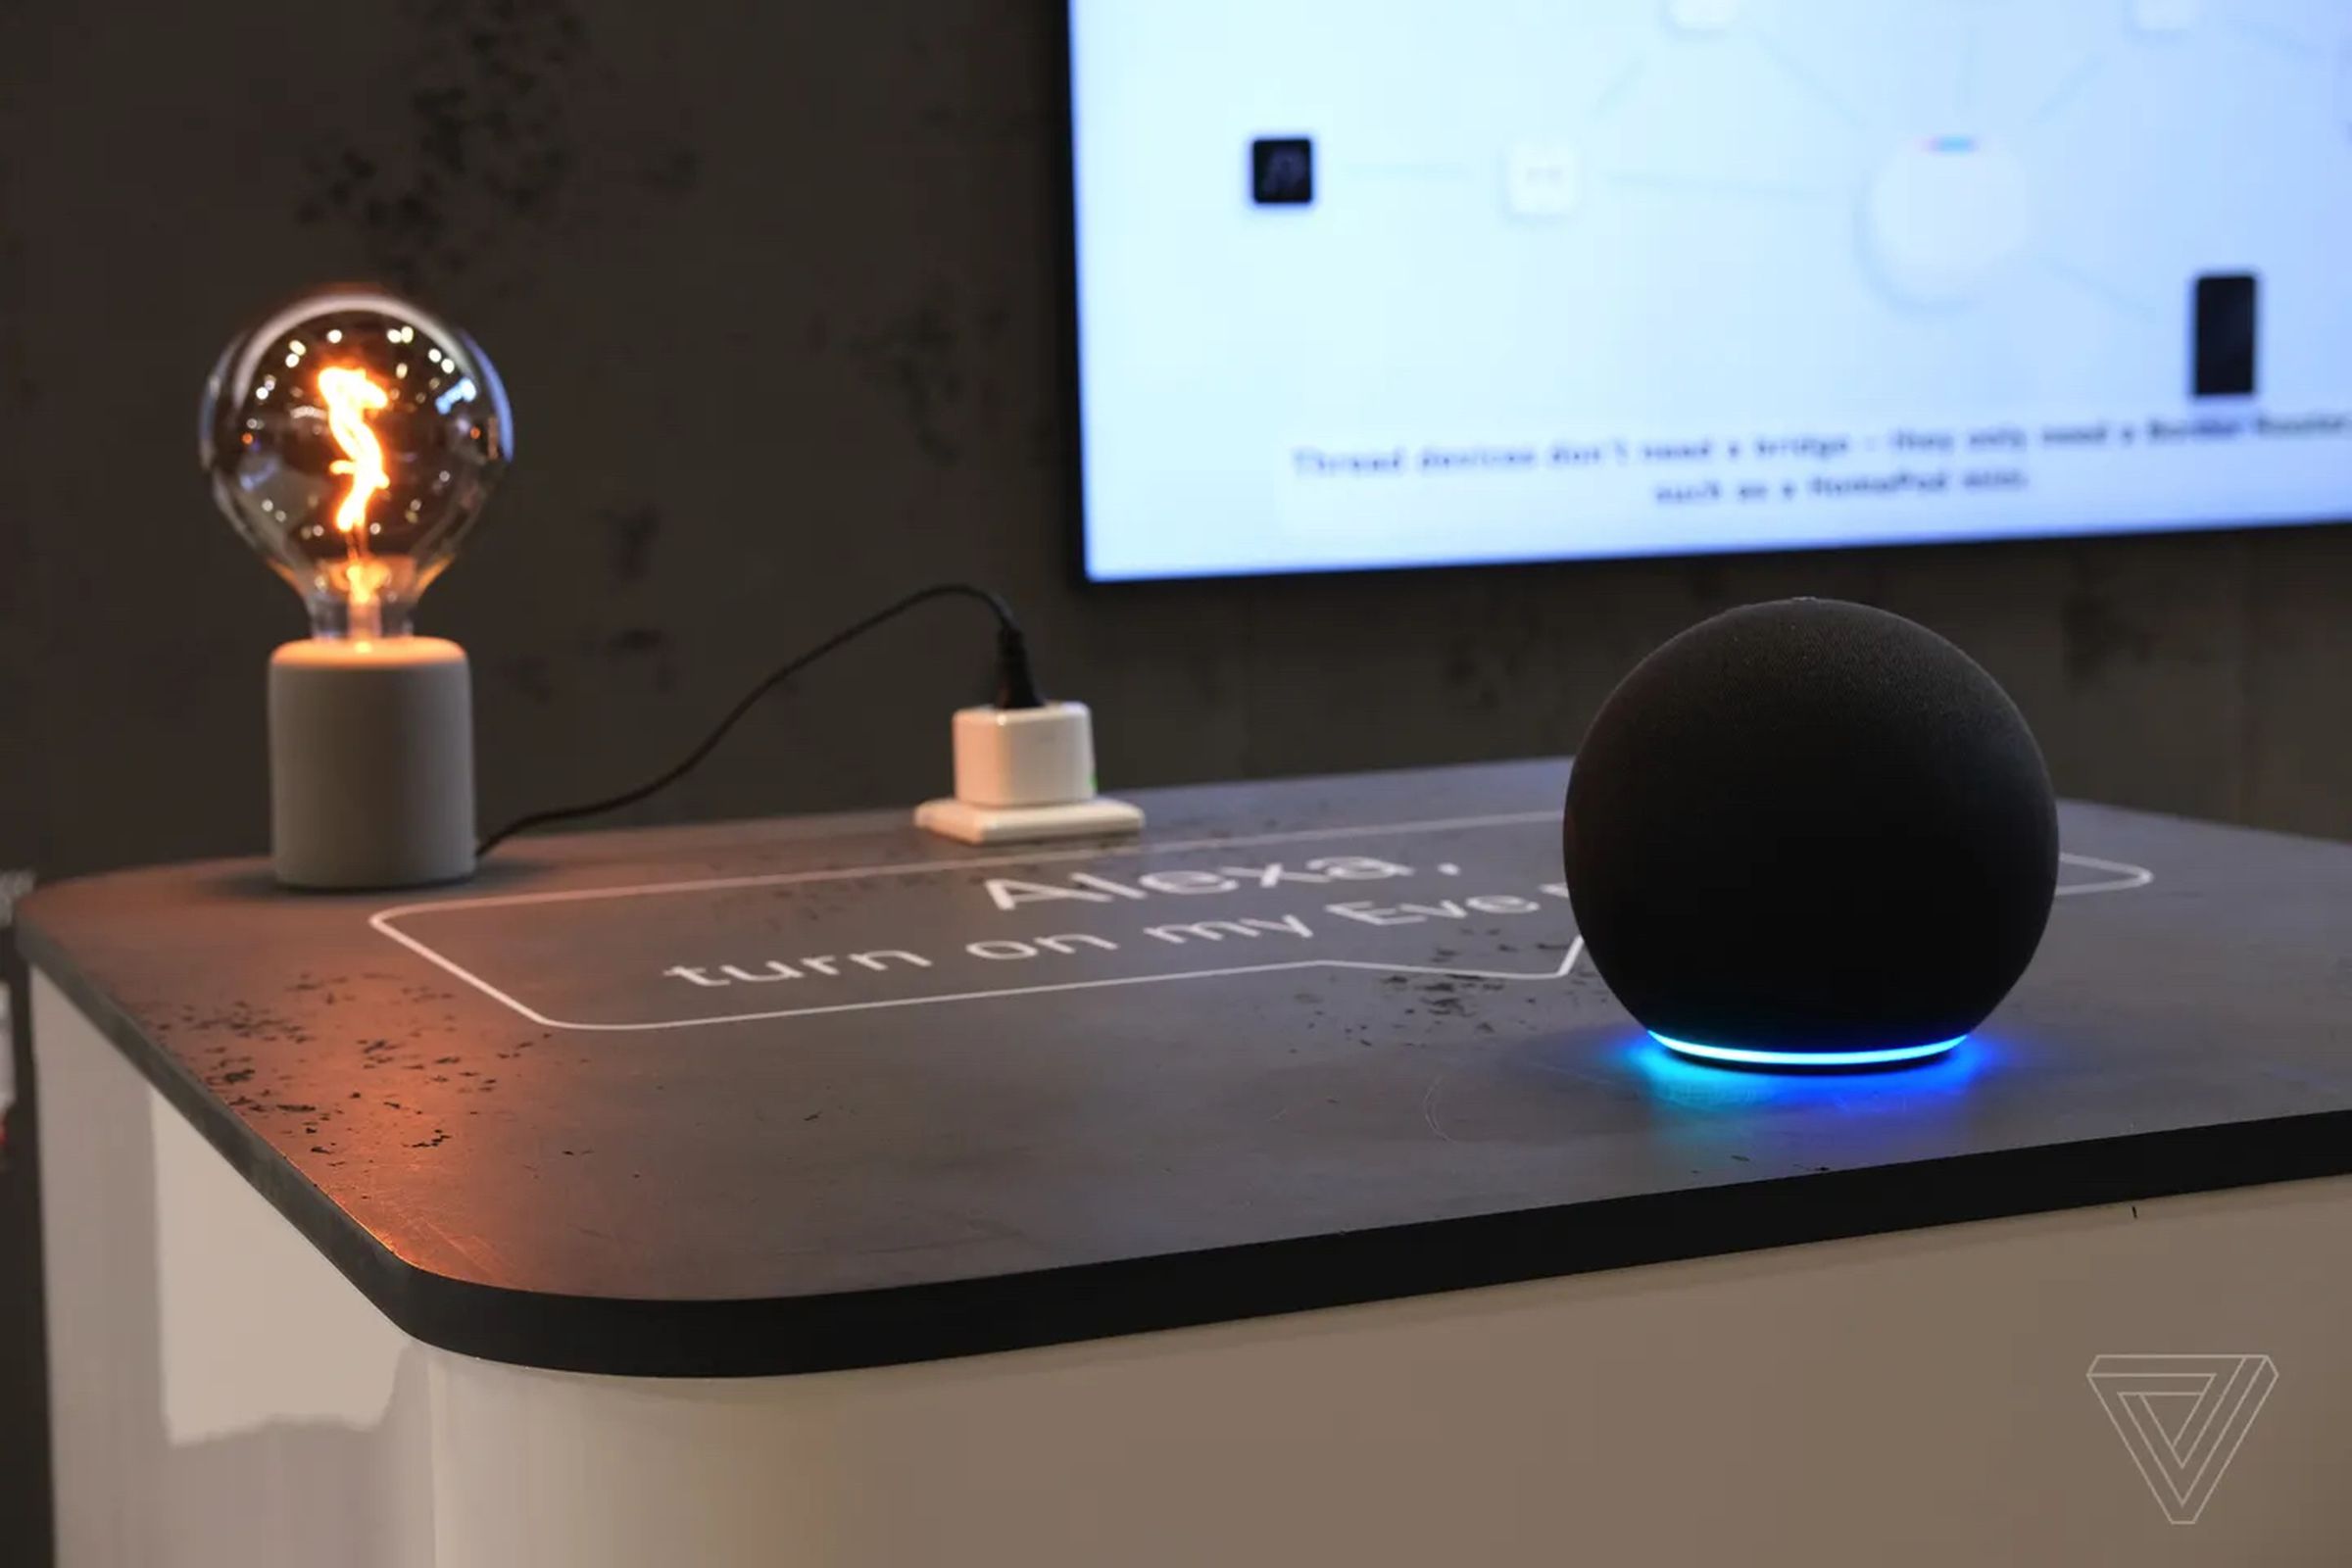 Eve Energy akıllı fişi, Amazon Echo akıllı hoparlörü tarafından kontrol edilir. Matter, Eve cihazlarının herhangi bir akıllı ev platformunda kontrol edilmesini mümkün kılacak.